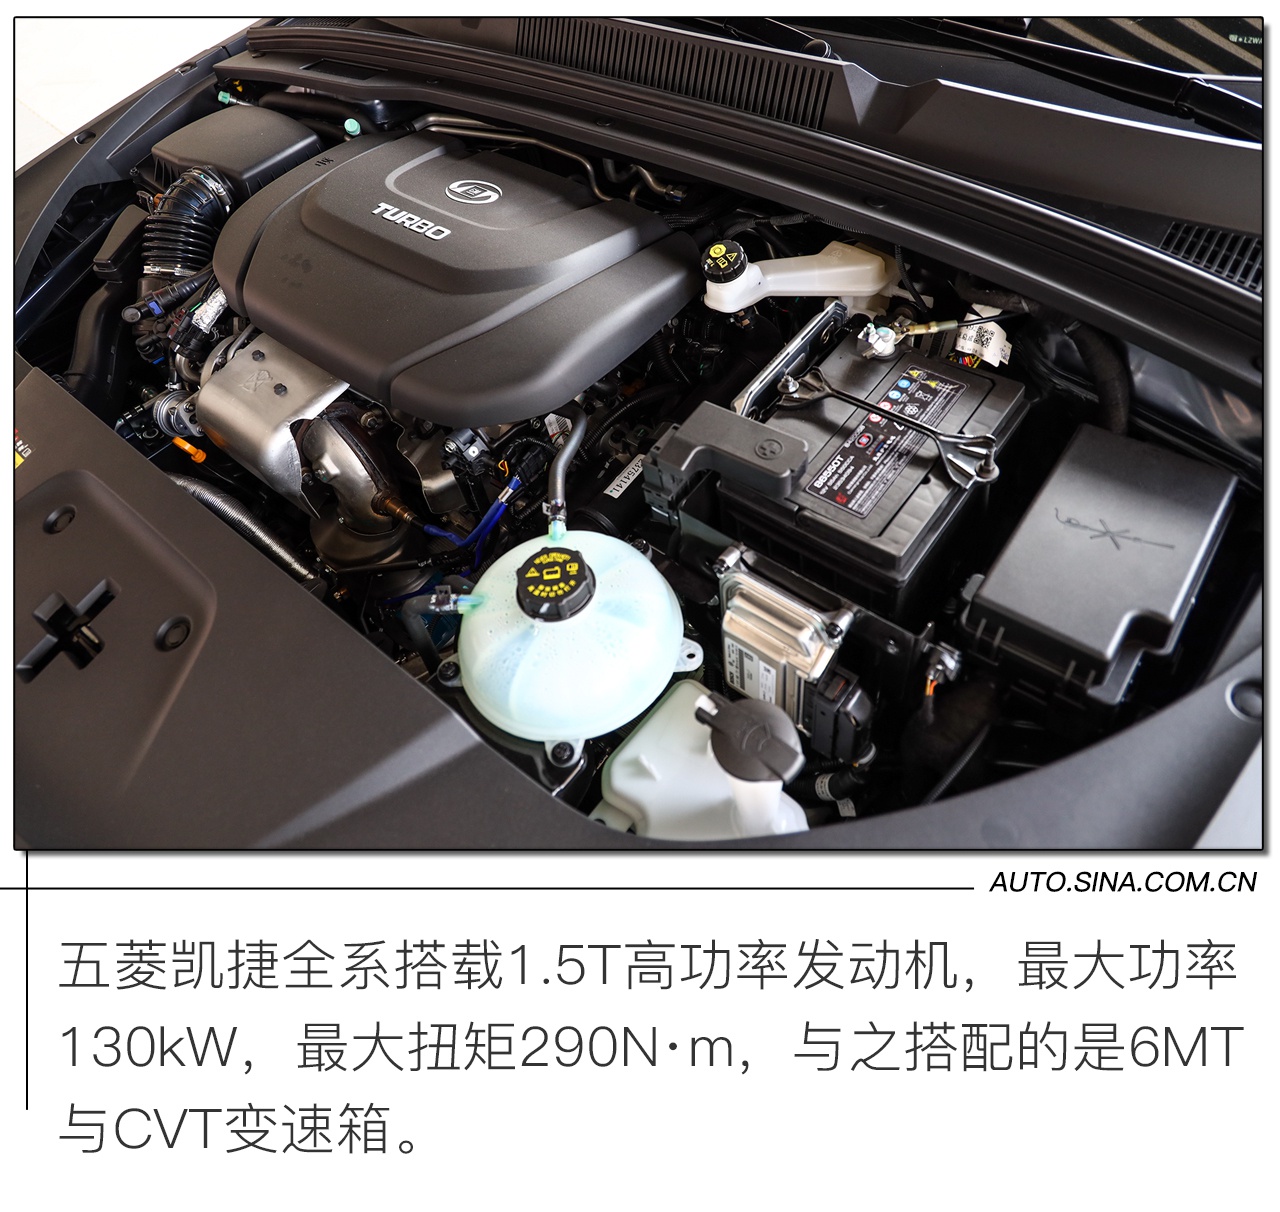 中产气息浓厚 五菱凯捷预售8.98-11.98万元